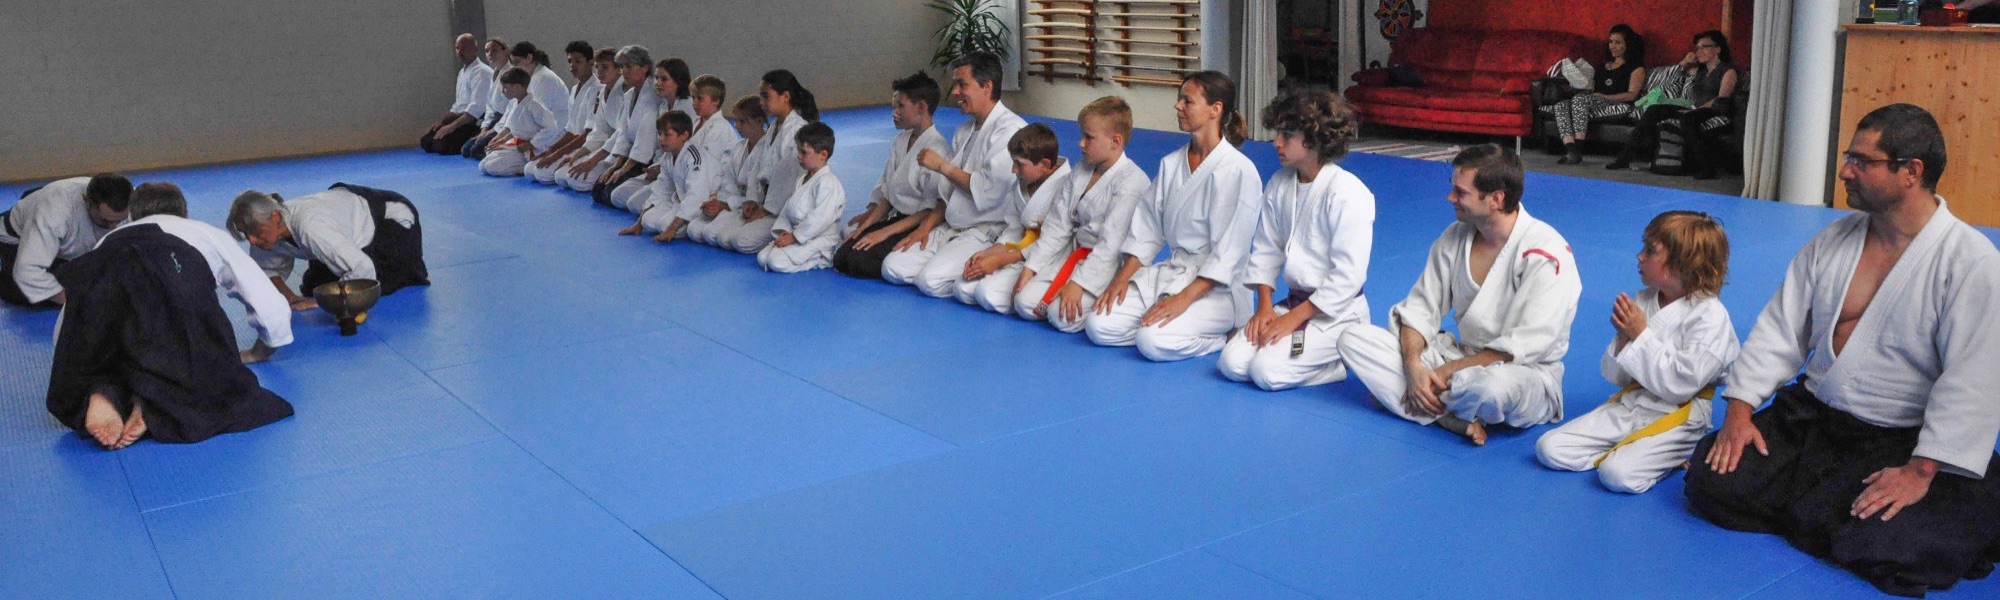 Aikido Kinderseminar 2016-06-11 (81 von 85)